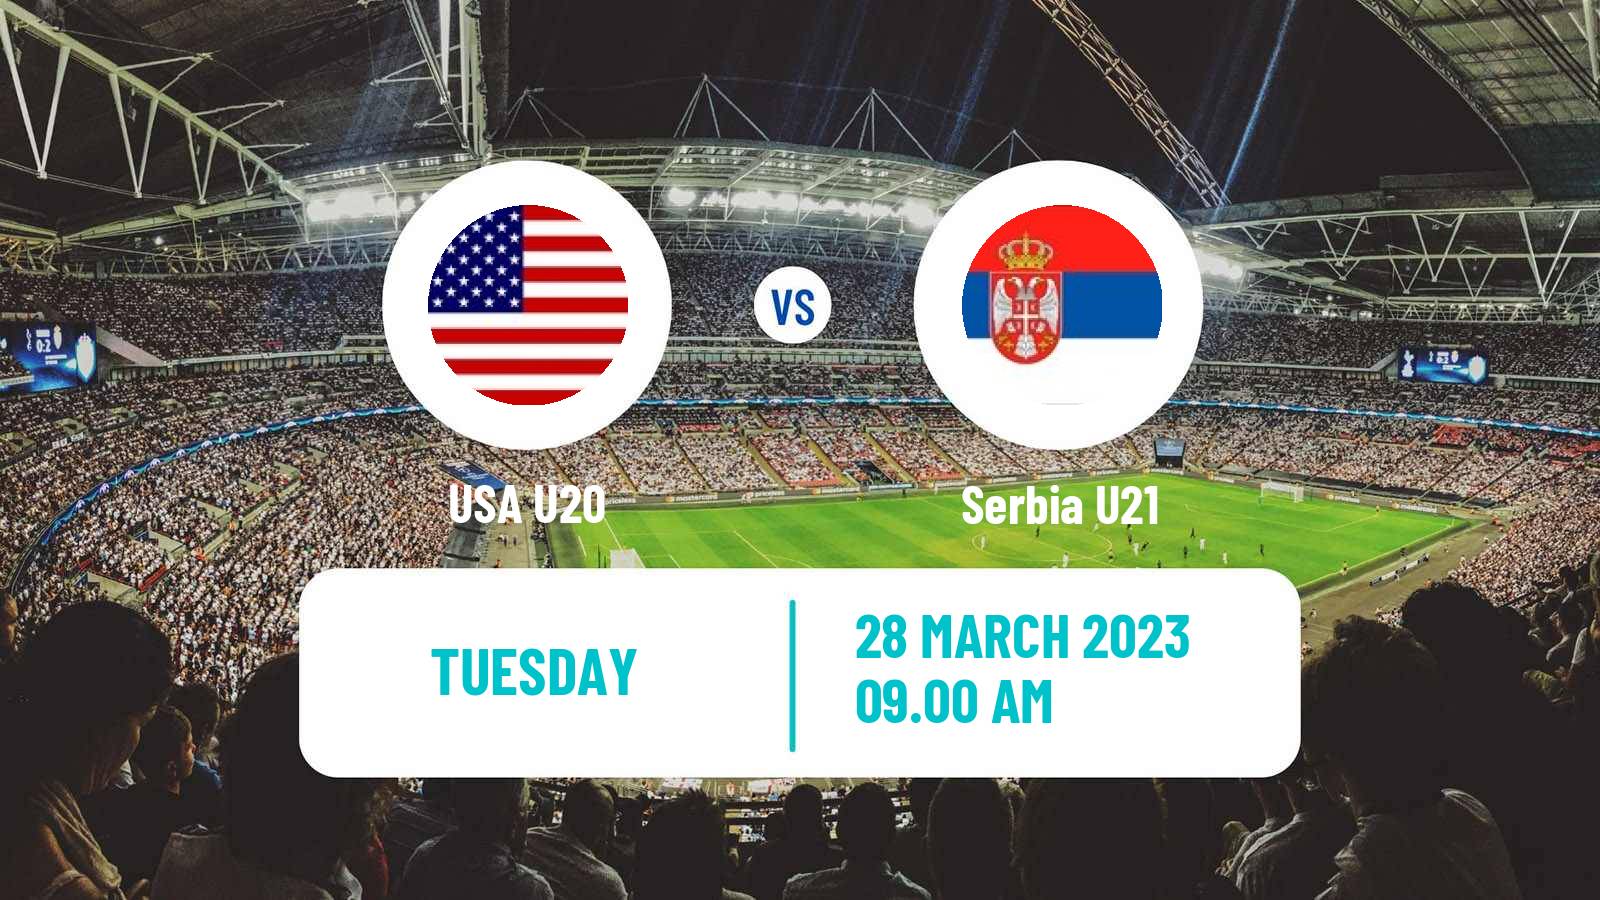 Soccer Friendly USA U20 - Serbia U21